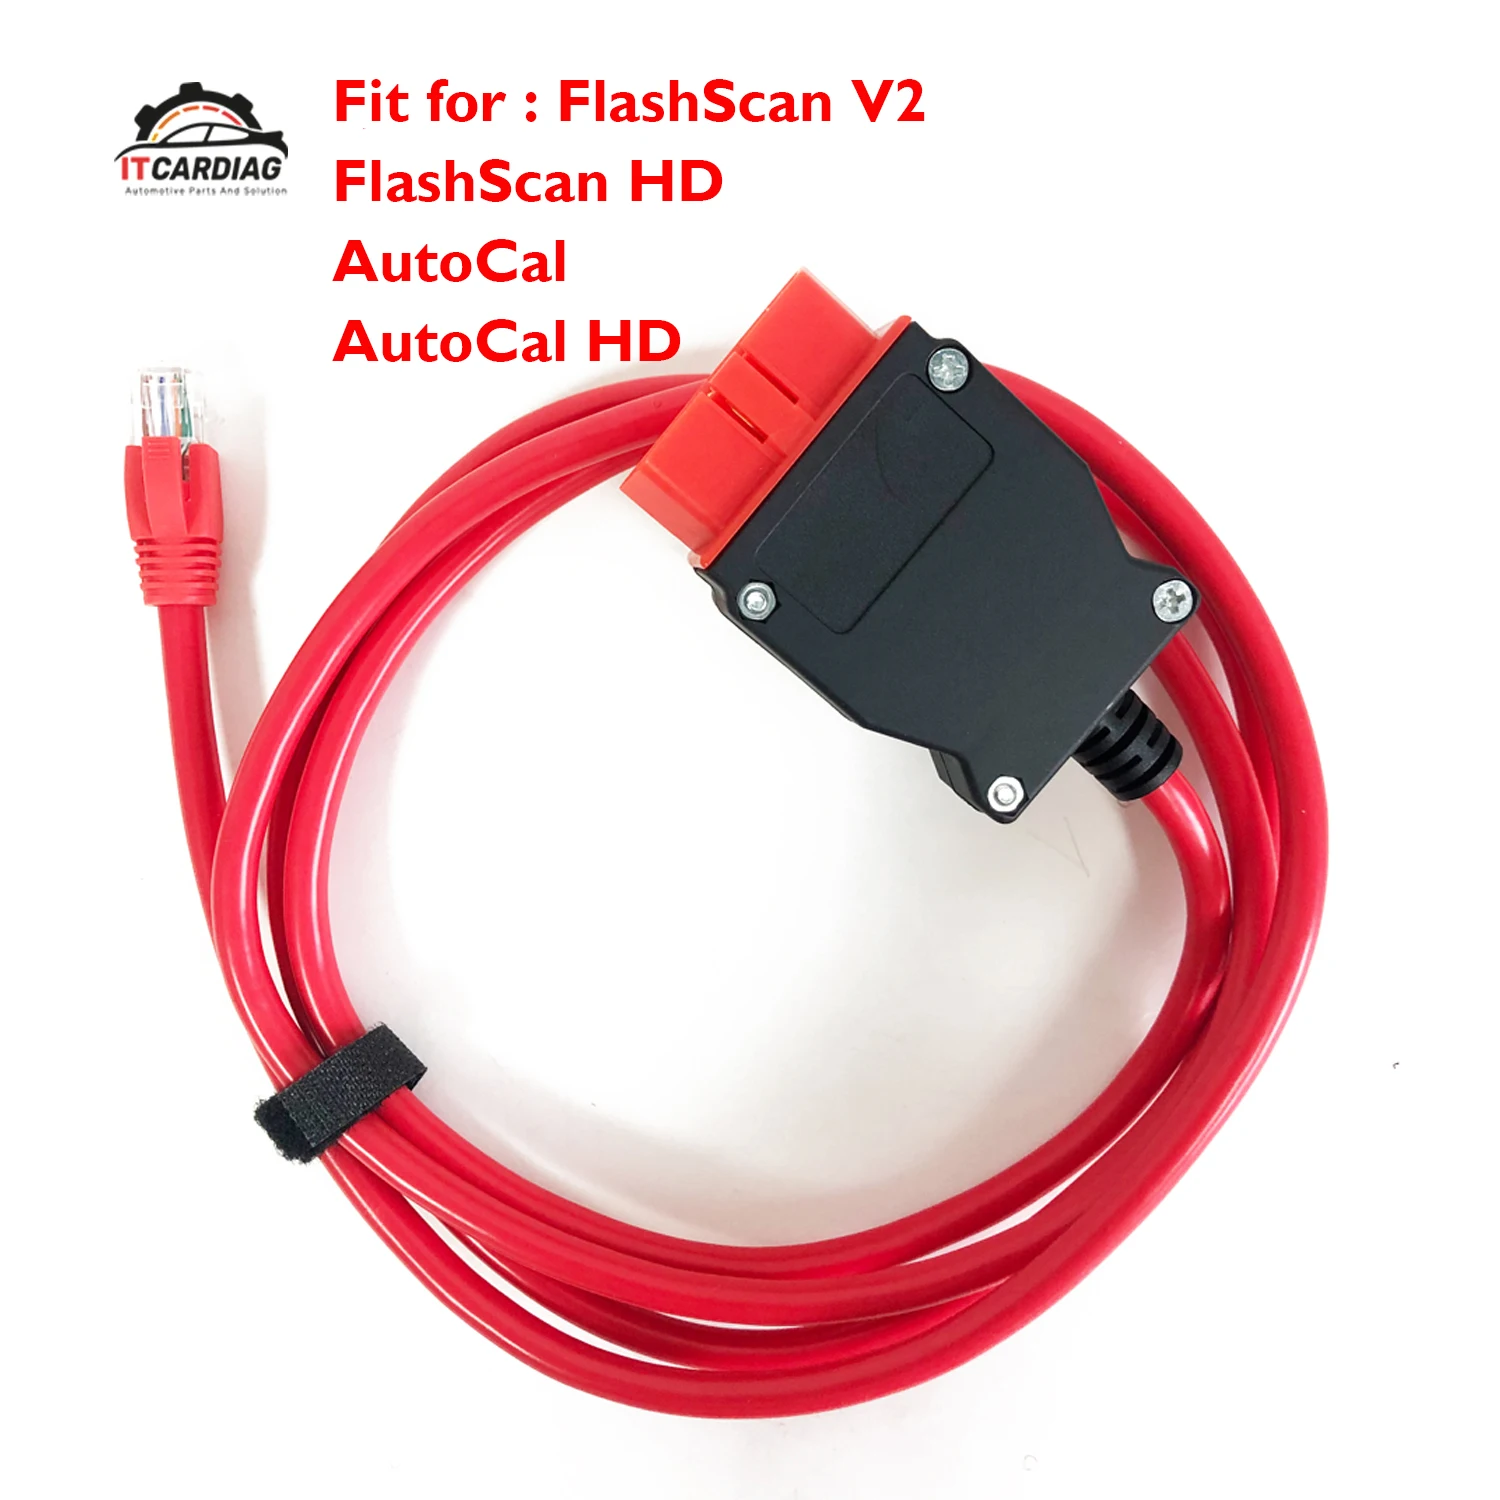 Сменный кабель Efilive EFI Live OBDII, Стандарт RJ45, подходит для использования с FlashScan V2 FlashScan HD AutoCal и AutoCal HD